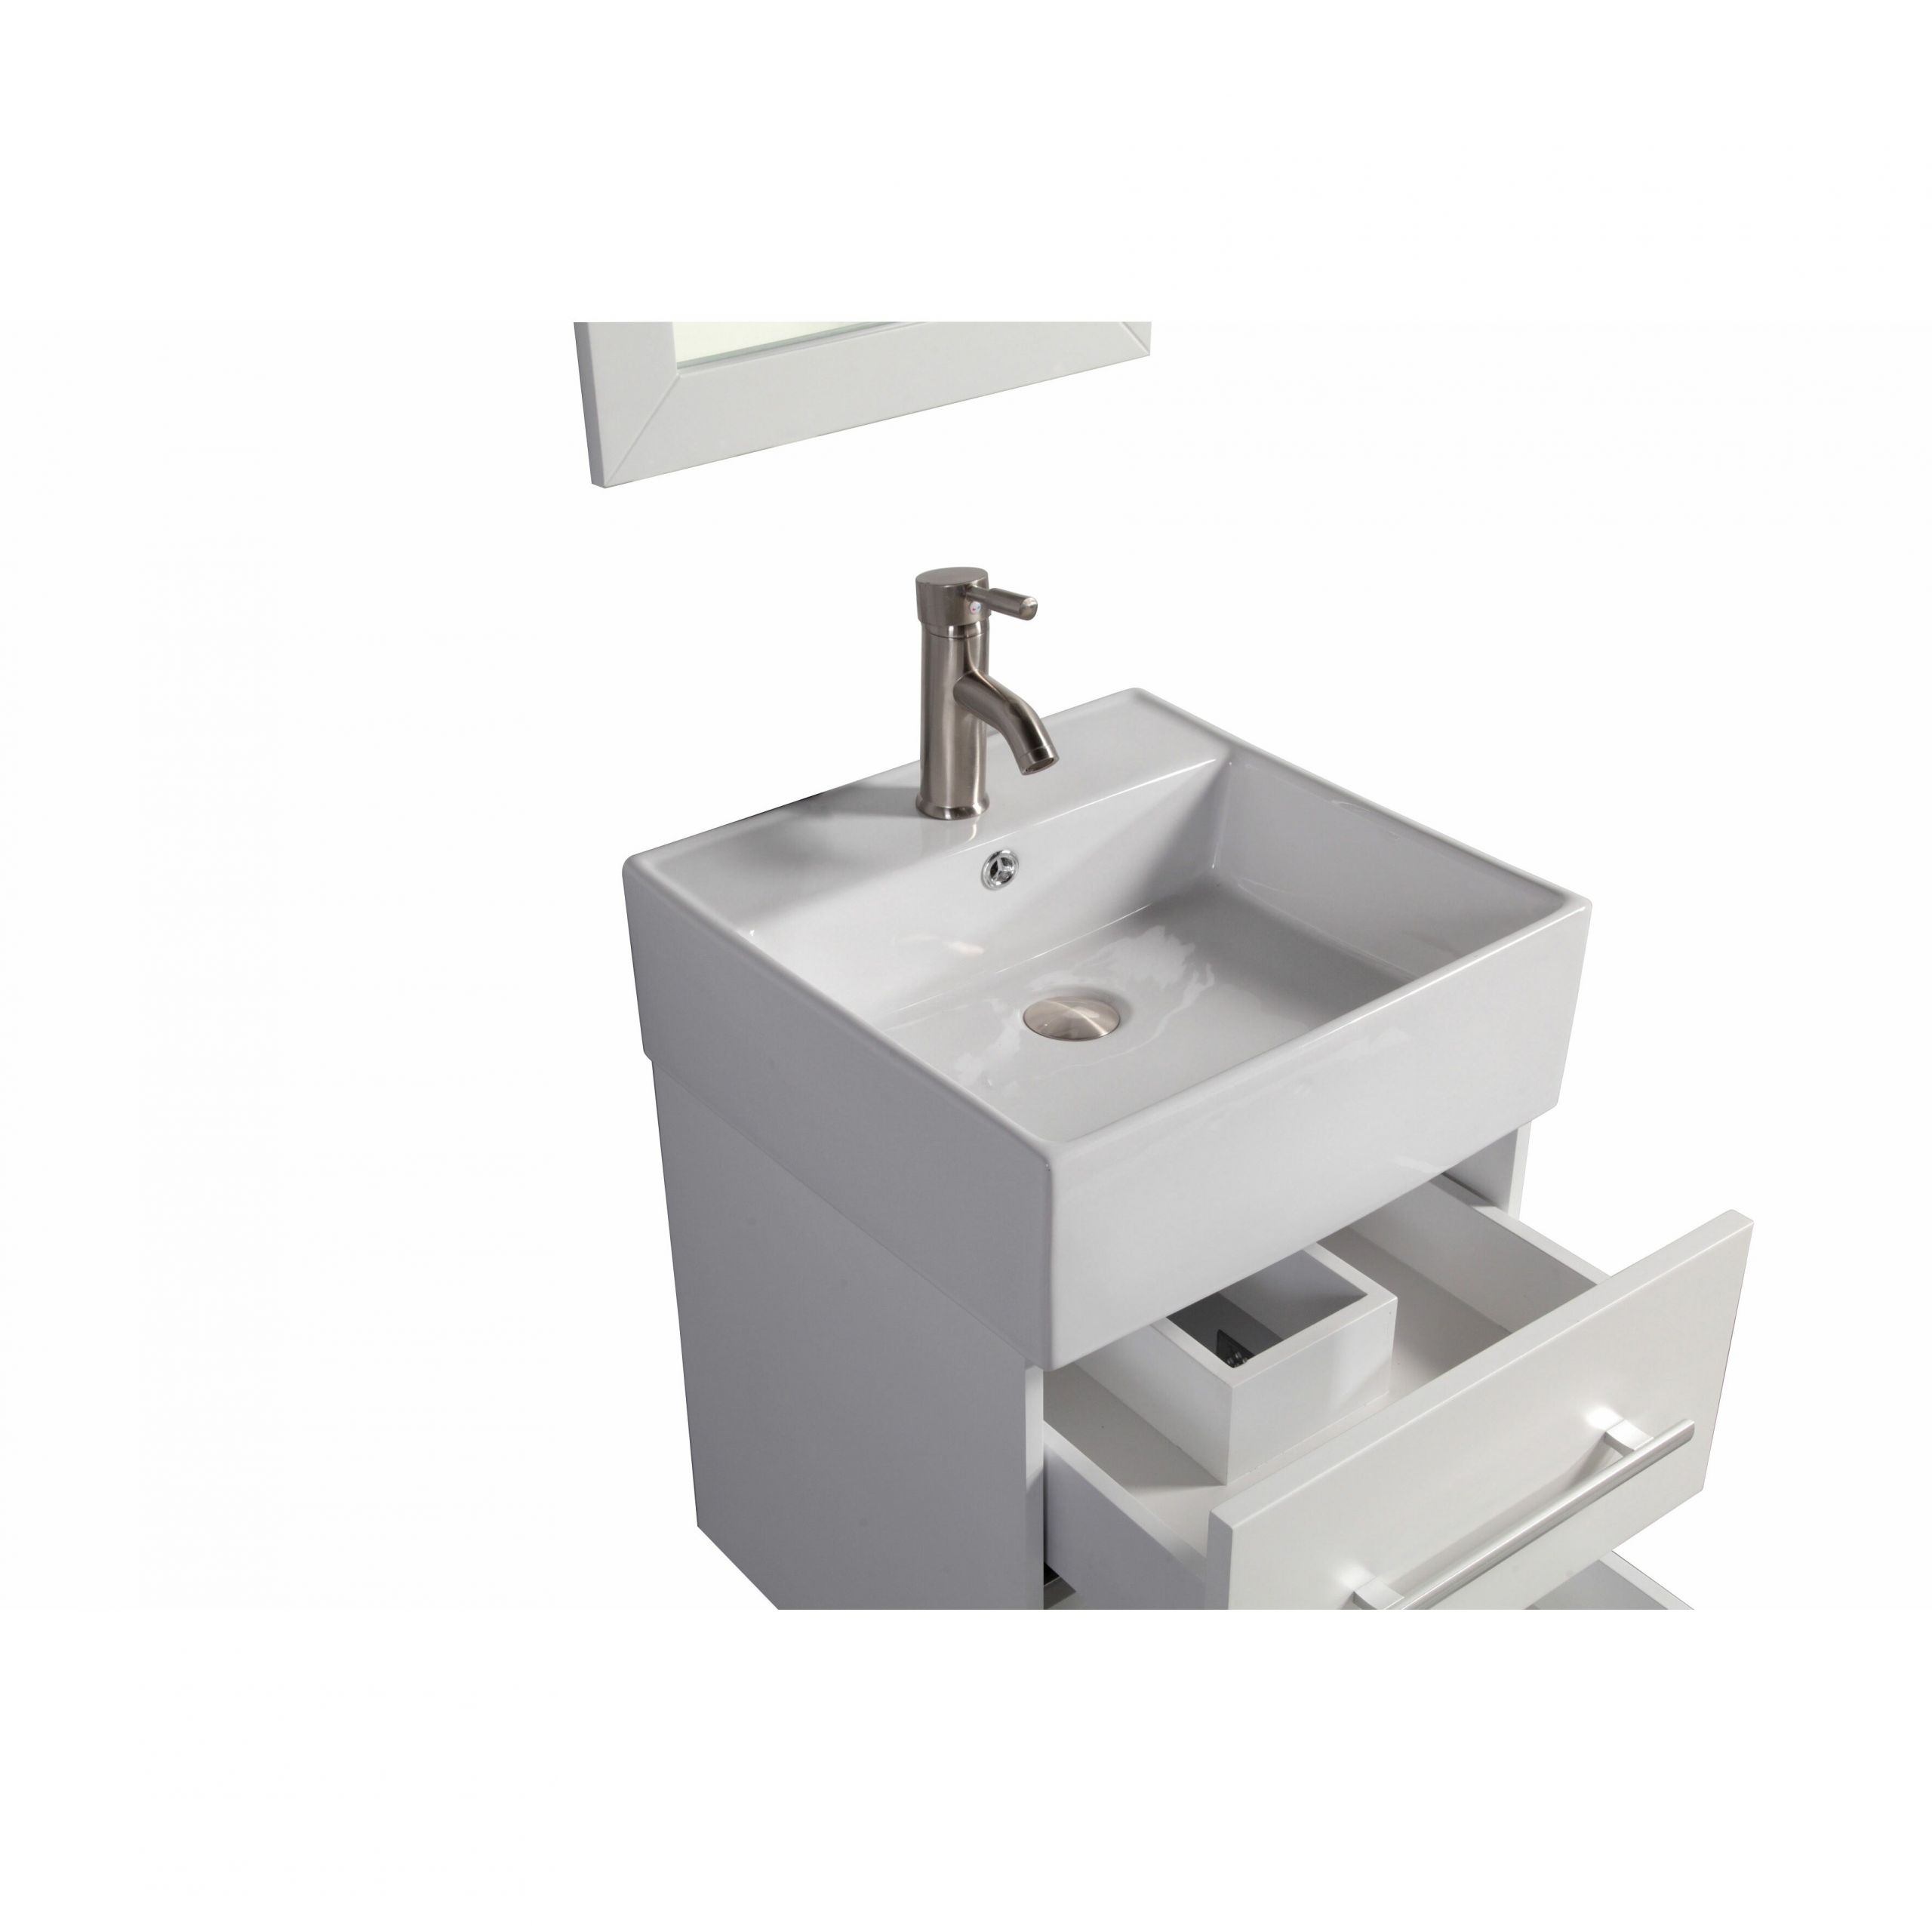 18 Bathroom Vanity With Sink
 Nepal 18" Single Sink Wall Mounted Bathroom Vanity Set